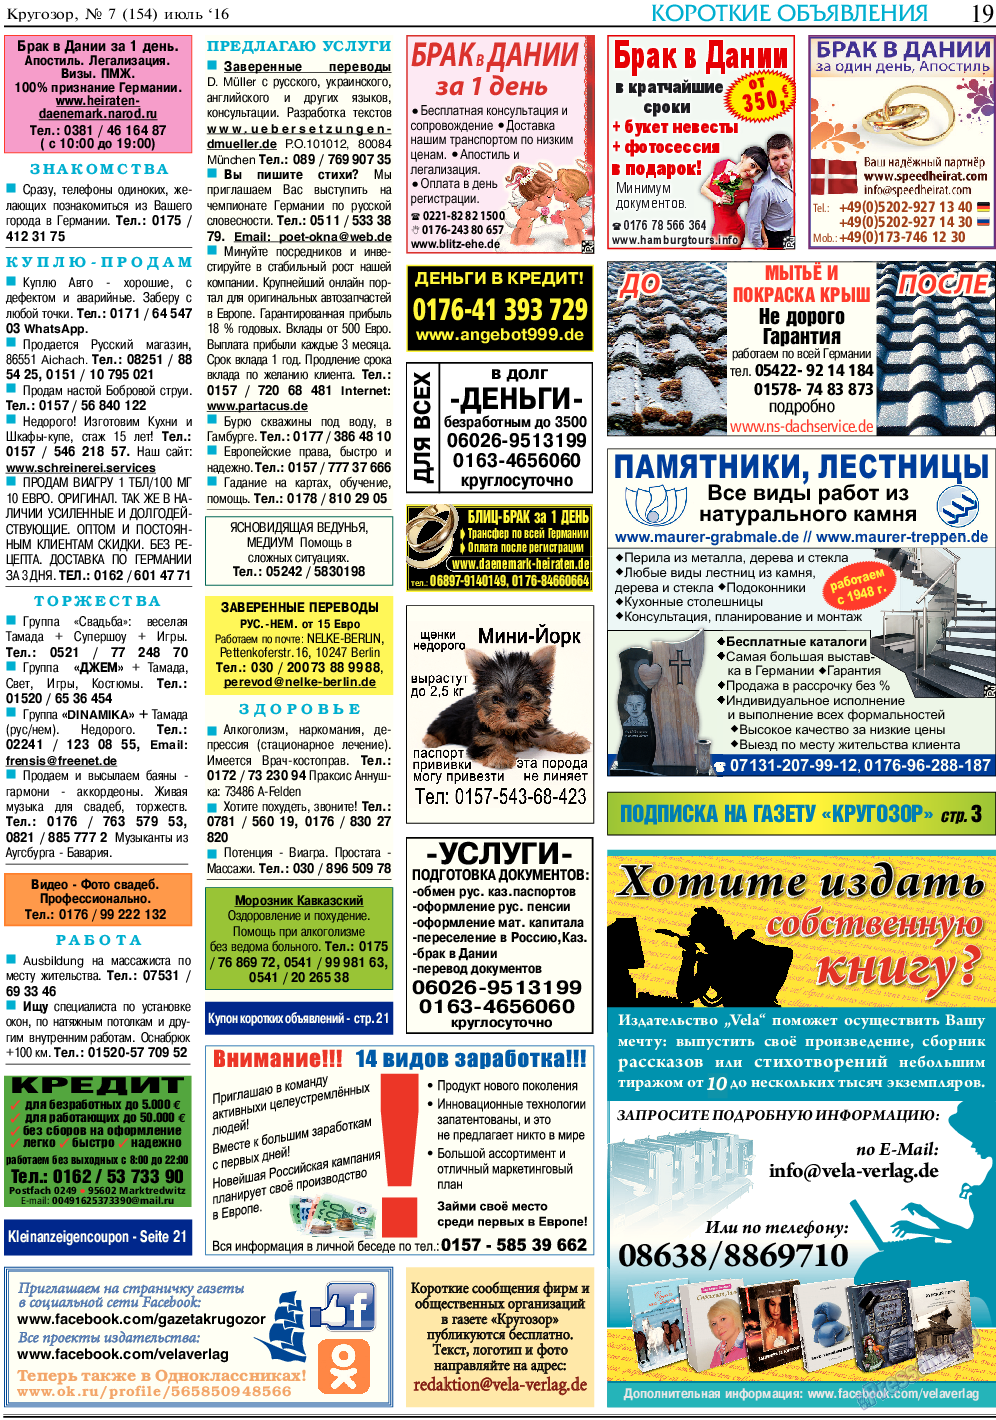 Кругозор, газета. 2016 №7 стр.19